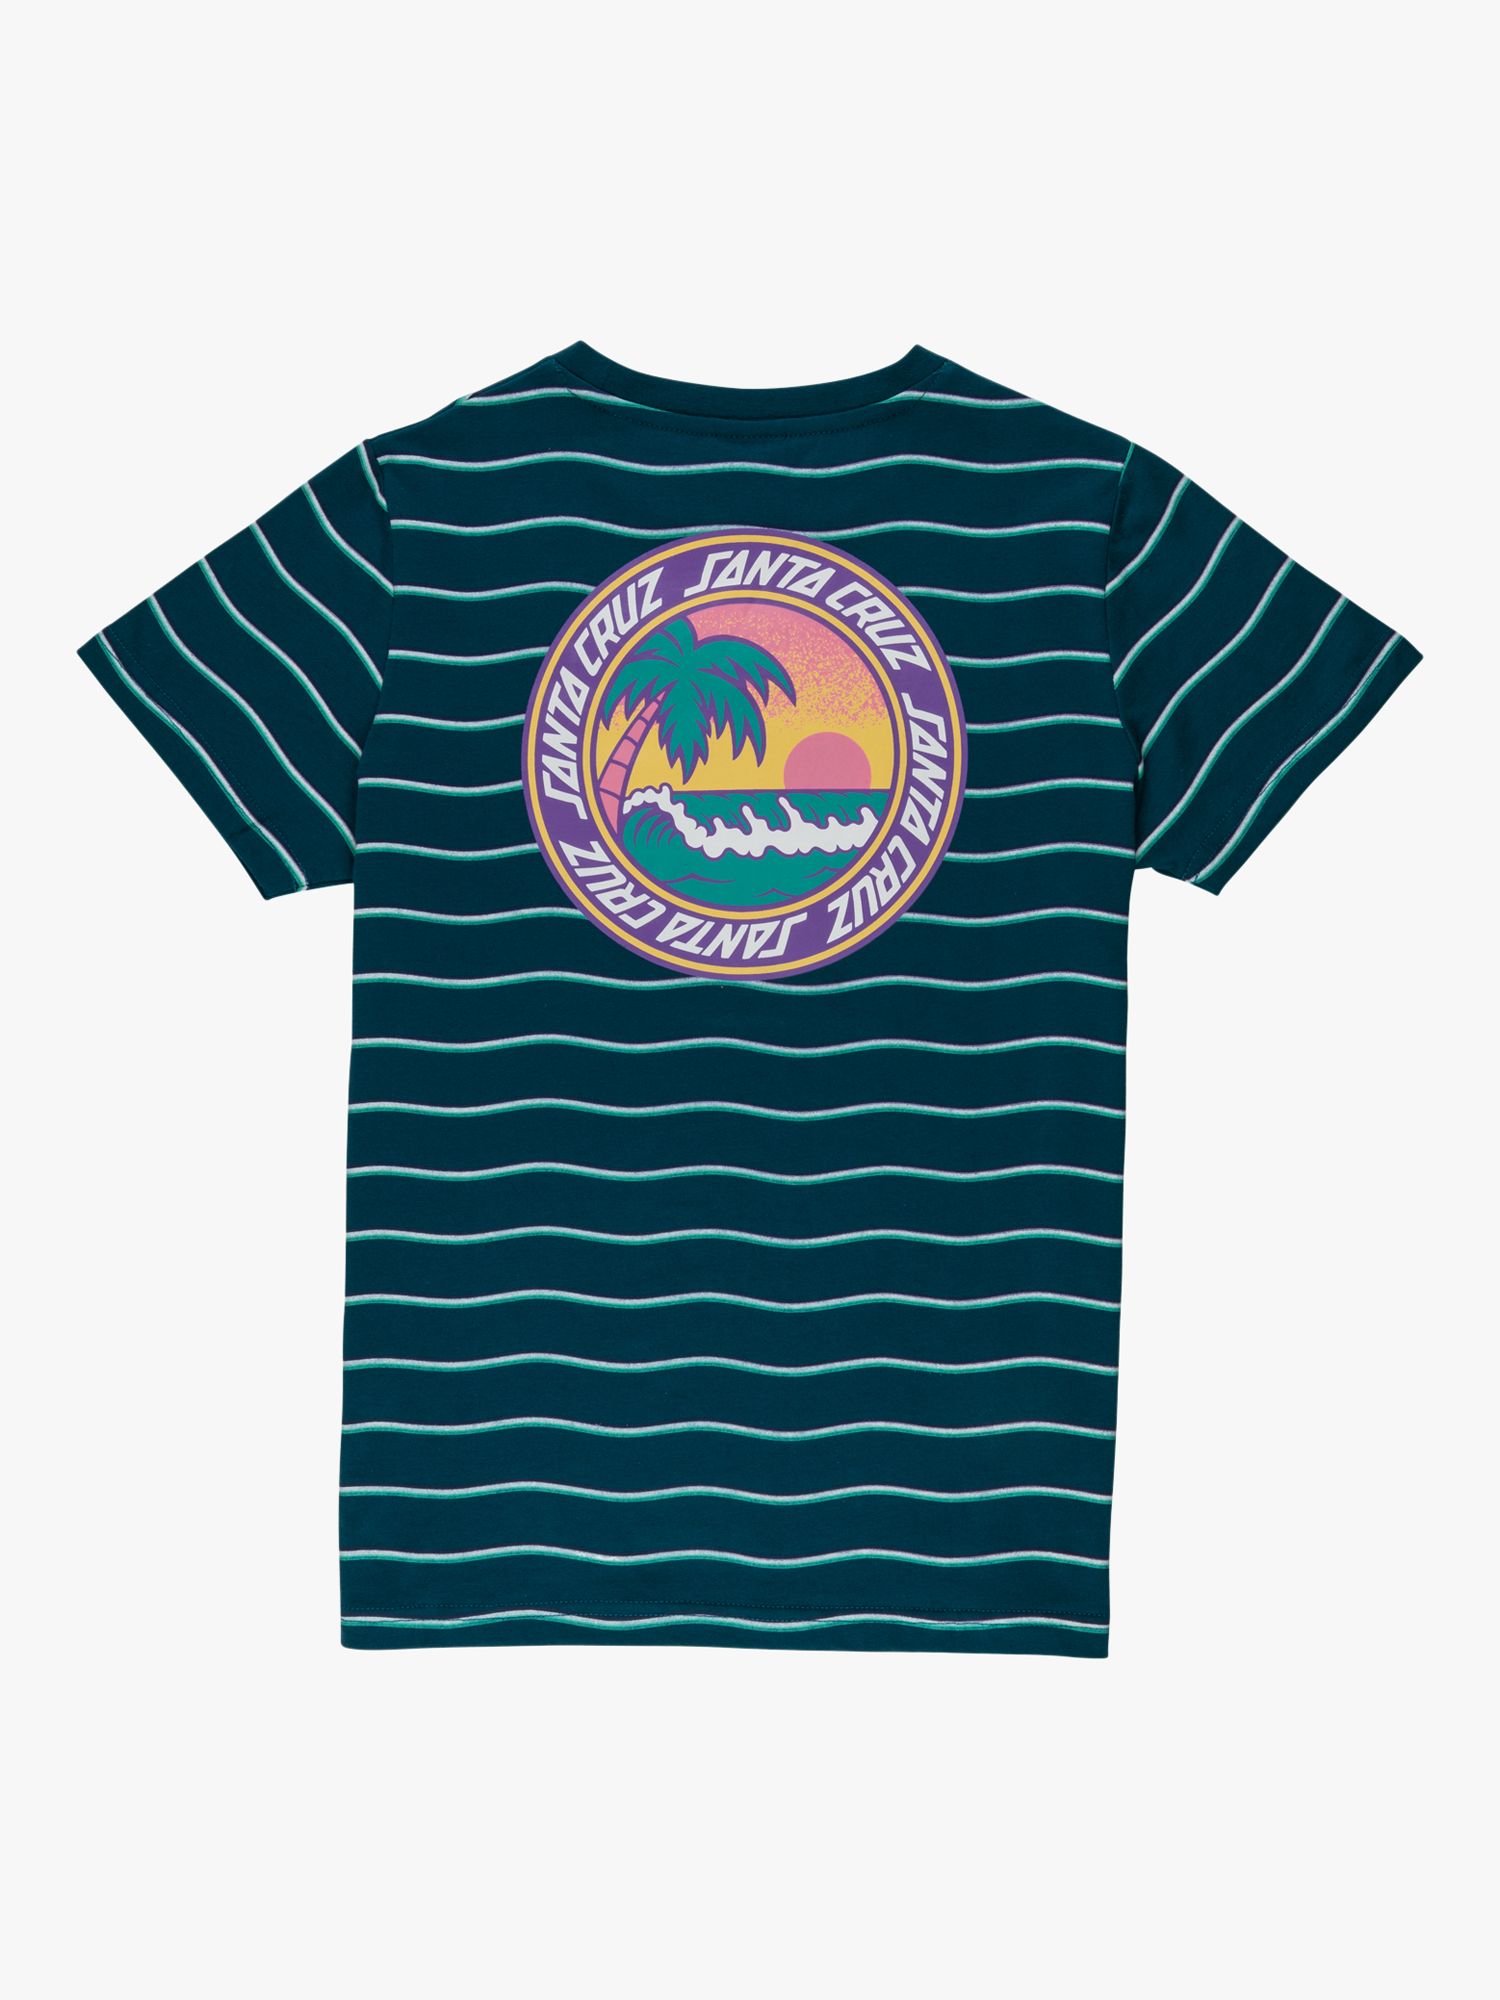 Santa Cruz Kids' Paradise Short Sleeve Stripe T-Shirt, Teal, 6-8 years